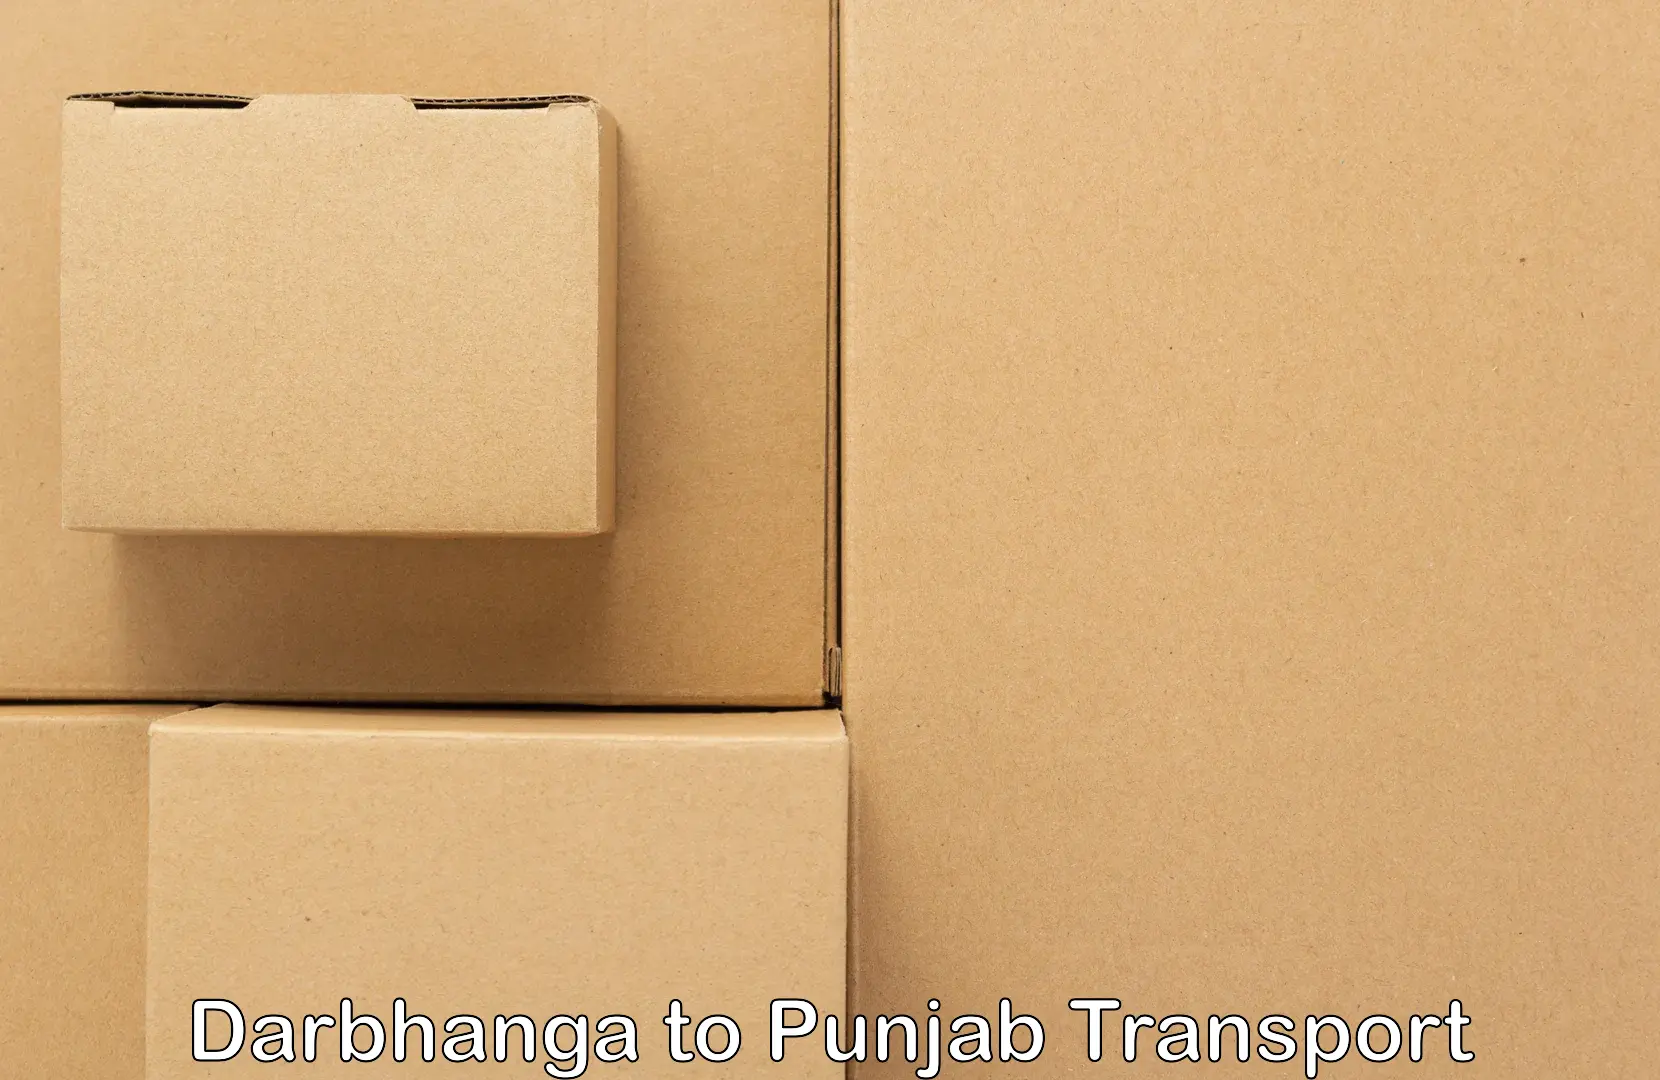 Nearest transport service Darbhanga to Moga